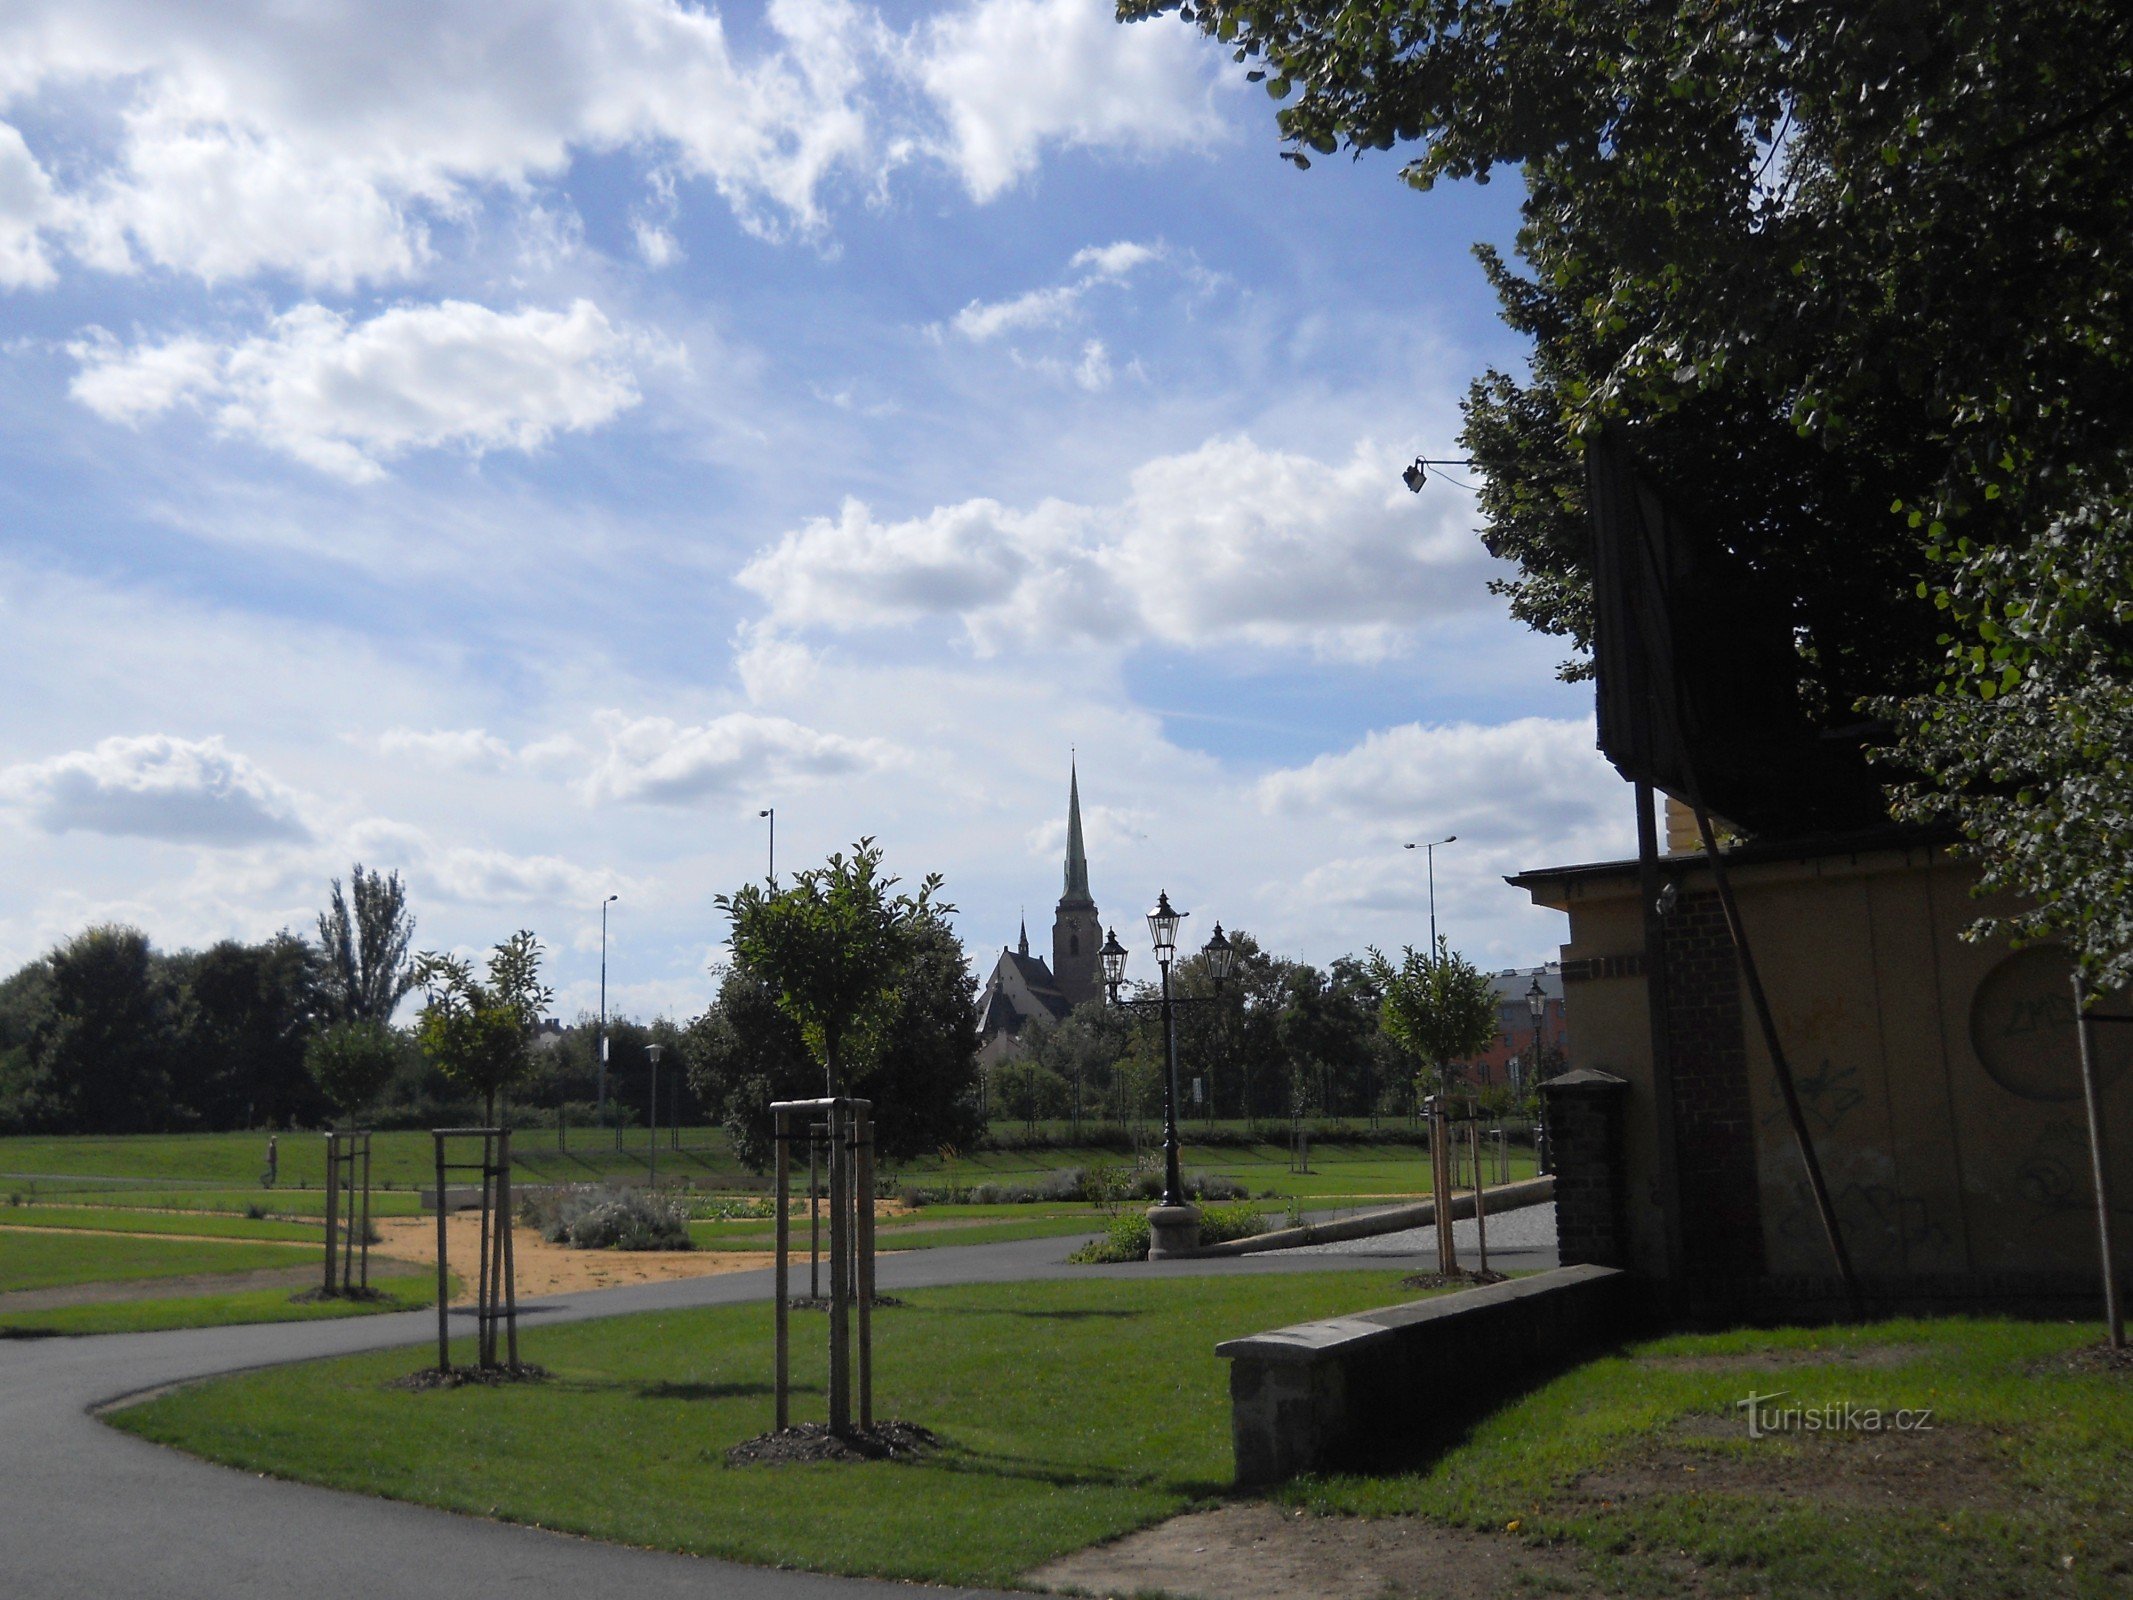 Wejście do parku z widokiem na pilzneńską katedrę św. Bartłomiej